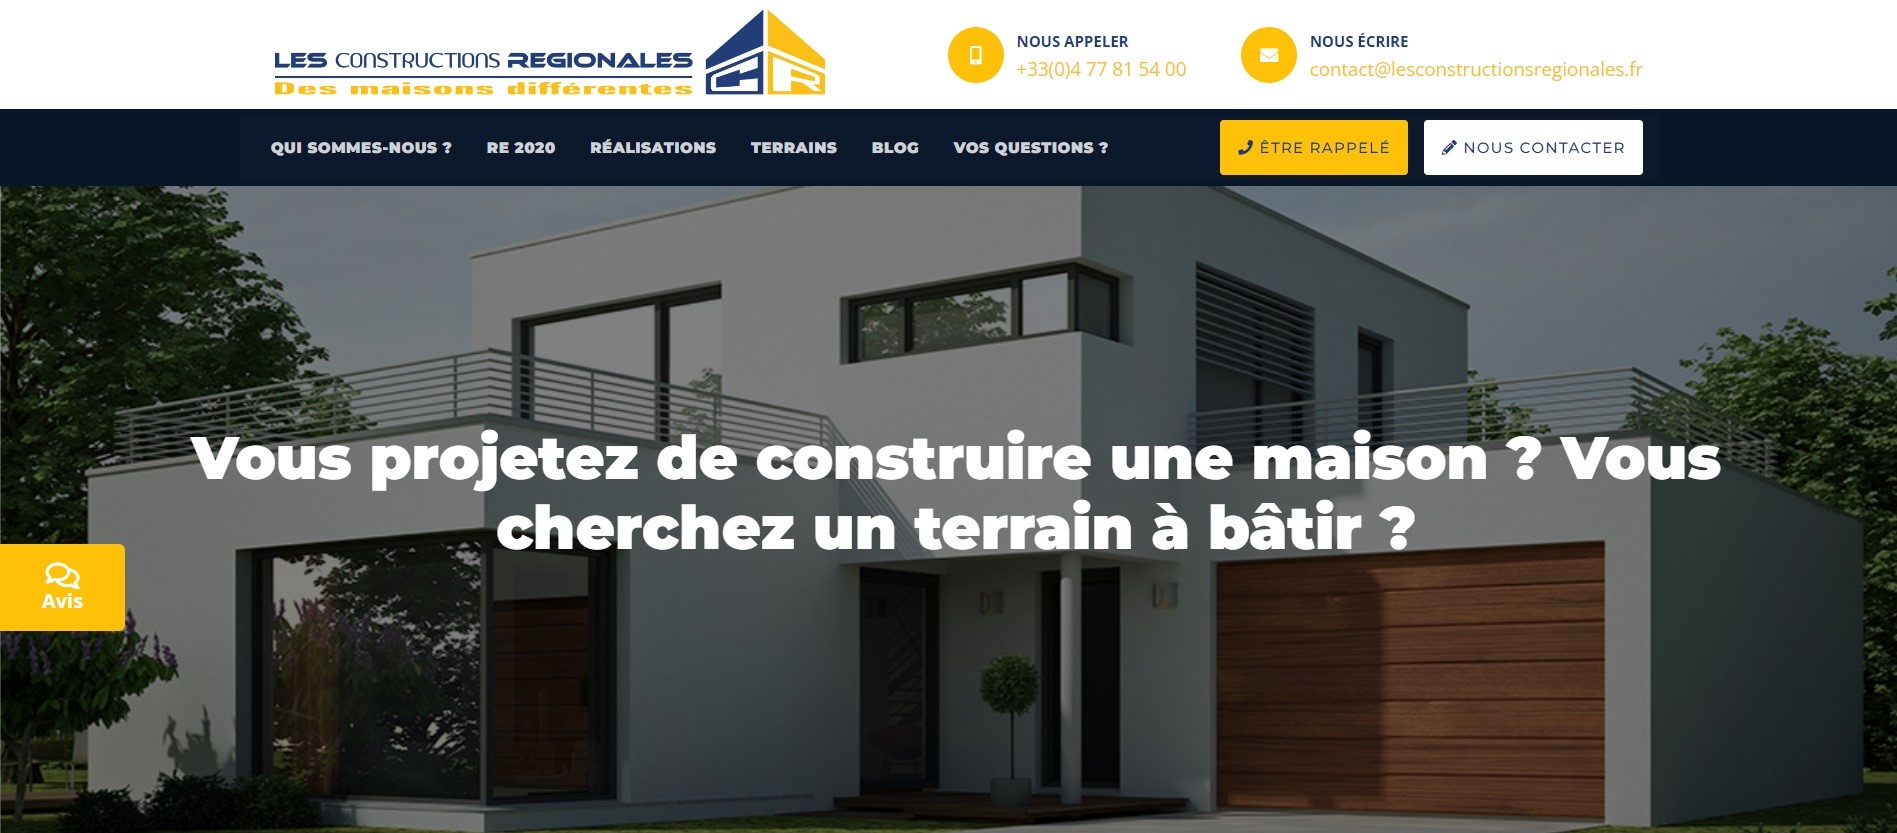  Les Constructions Régionales – Constructeur de maisons individuelles - Constructeur de Maison à Bourg-en-Bresse